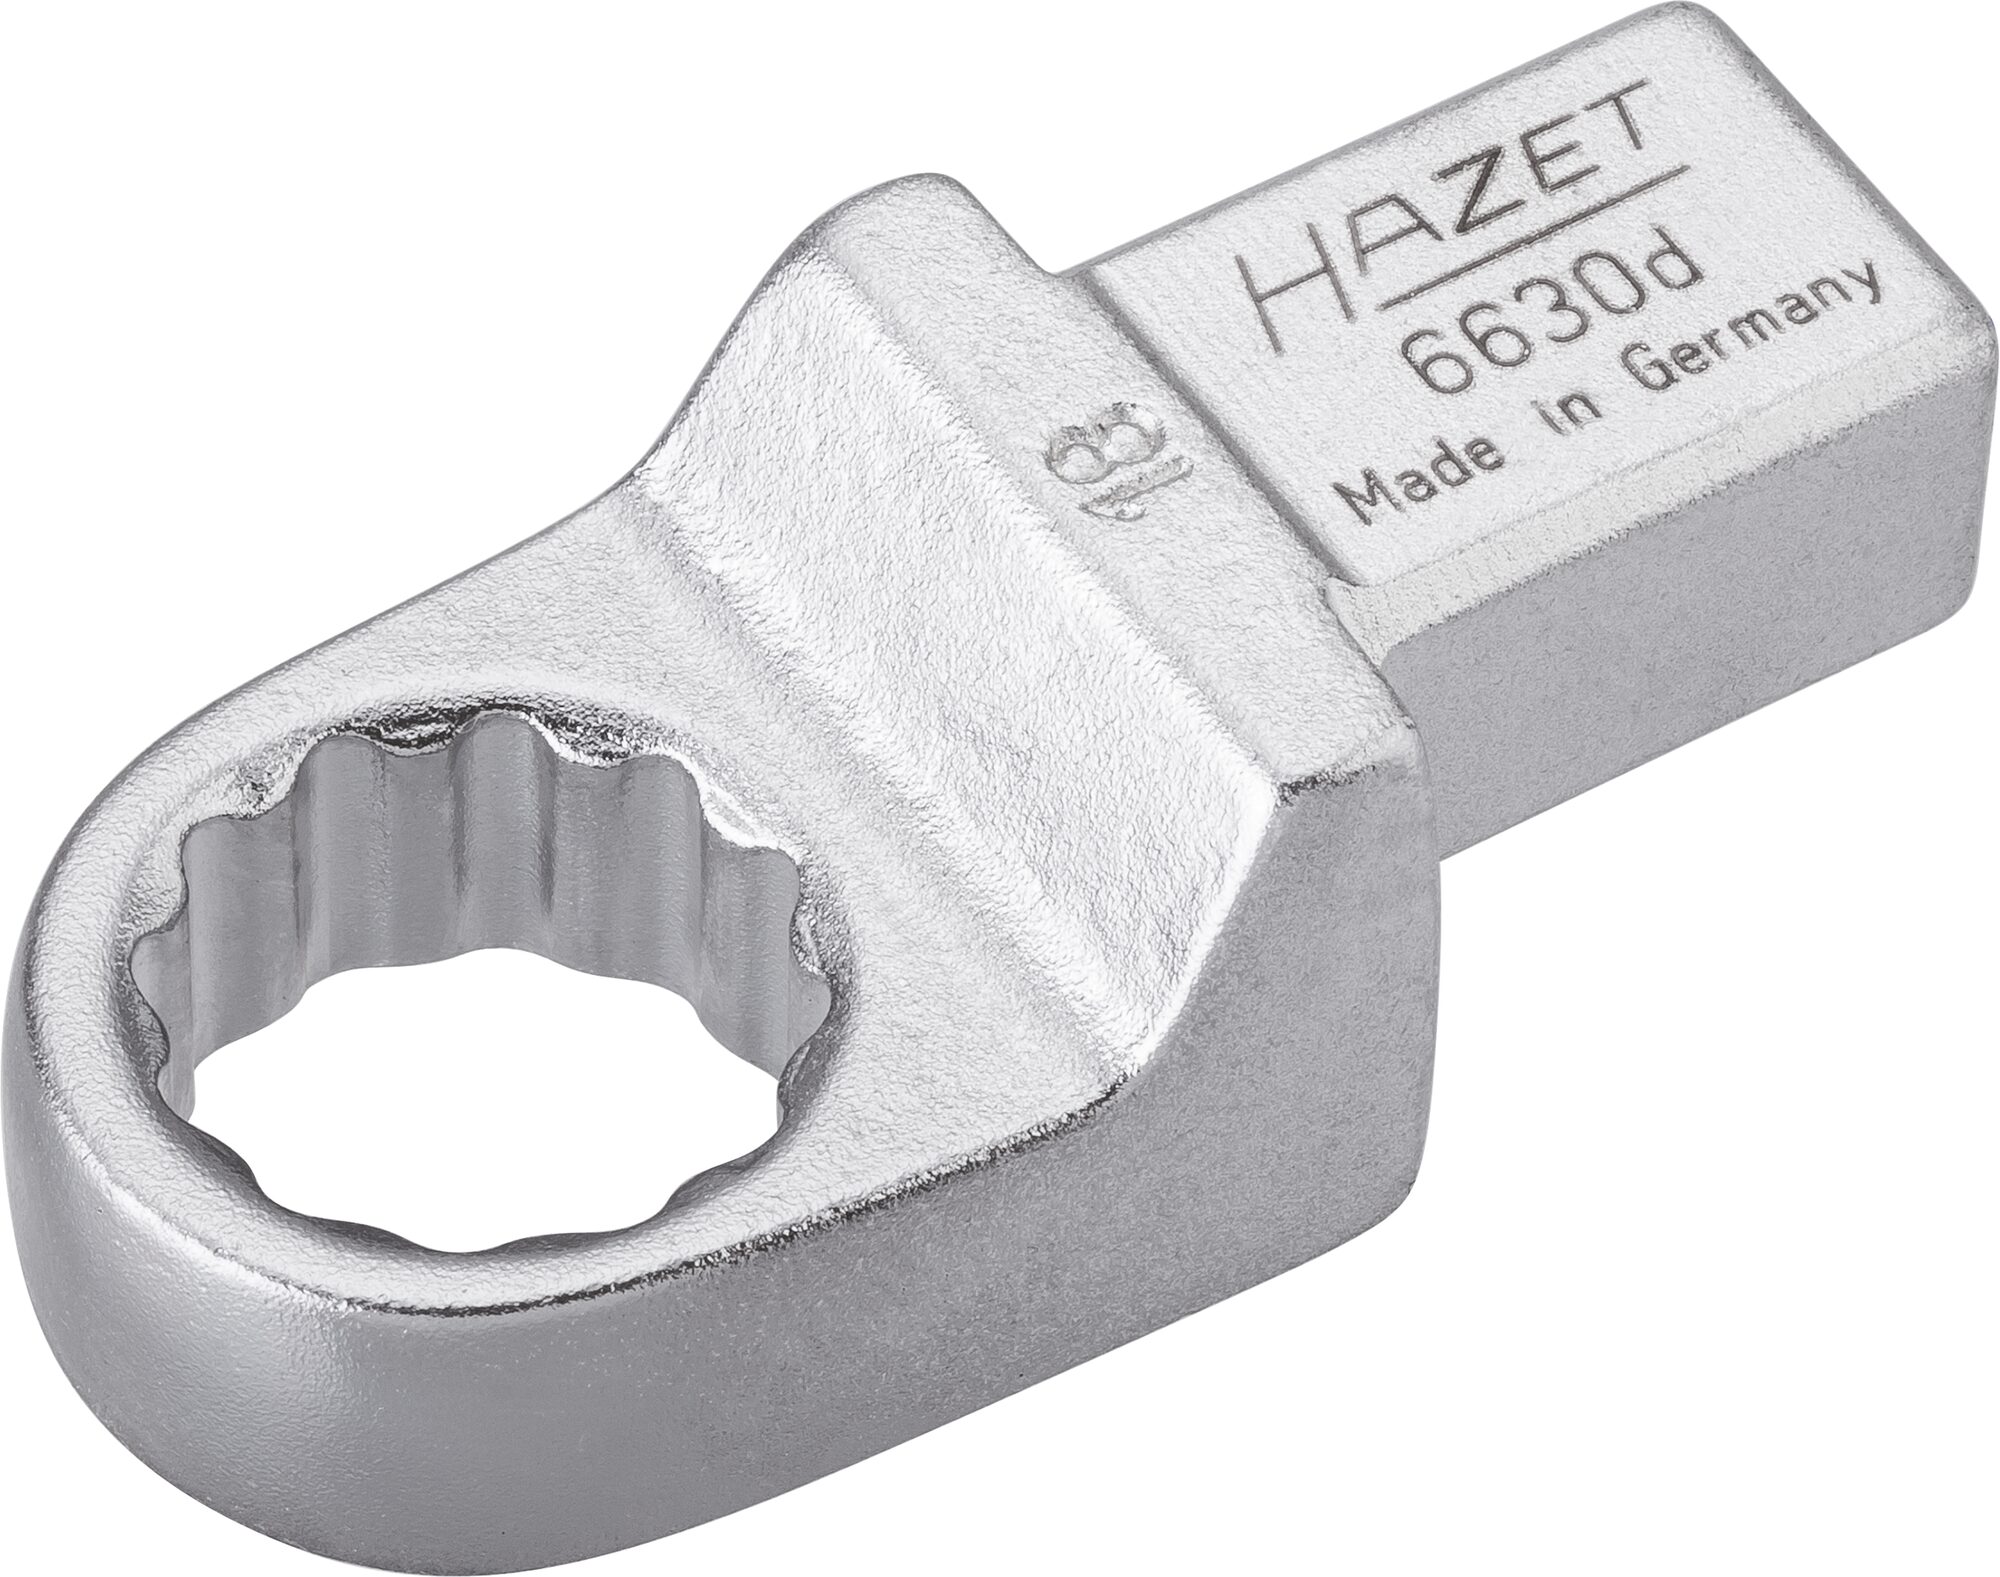 HAZET Einsteck-Ringschlüssel 6630D-18 · Einsteck-Vierkant 14 x 18 mm · Außen Doppel-Sechskant-Tractionsprofil · 18 mm